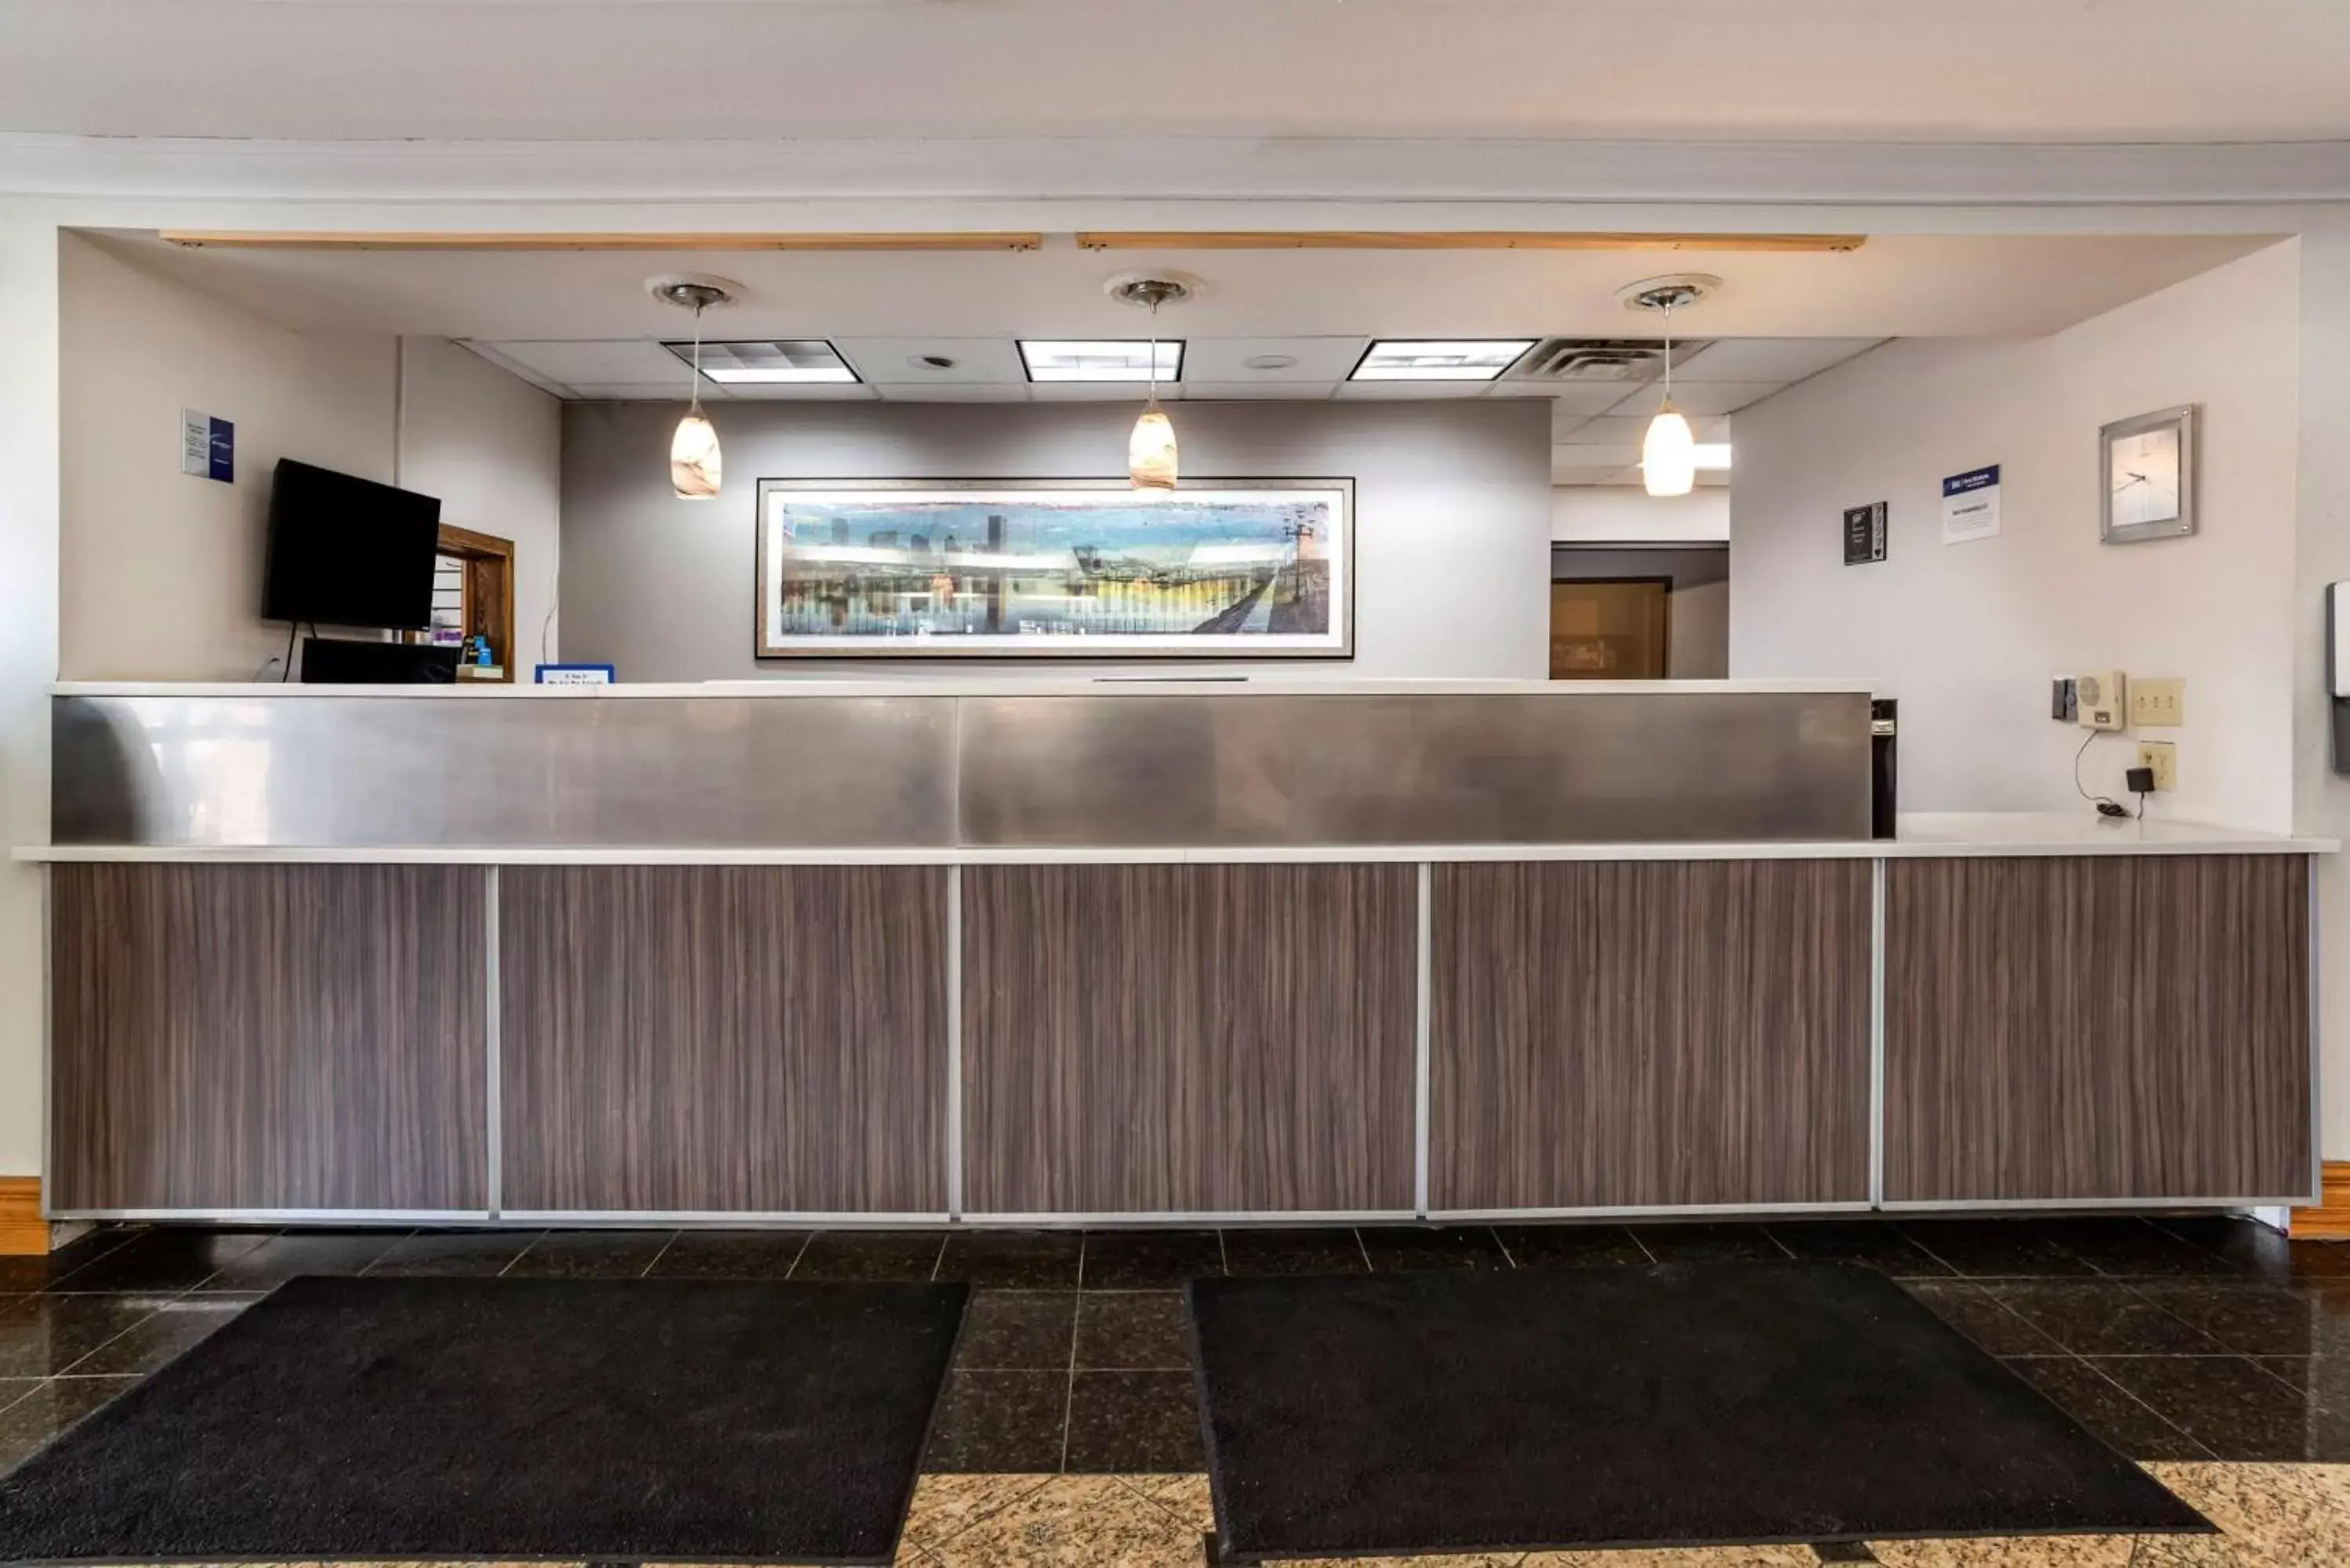 Lobby or reception, Lobby/Reception in Best Western Chesapeake Bay North Inn